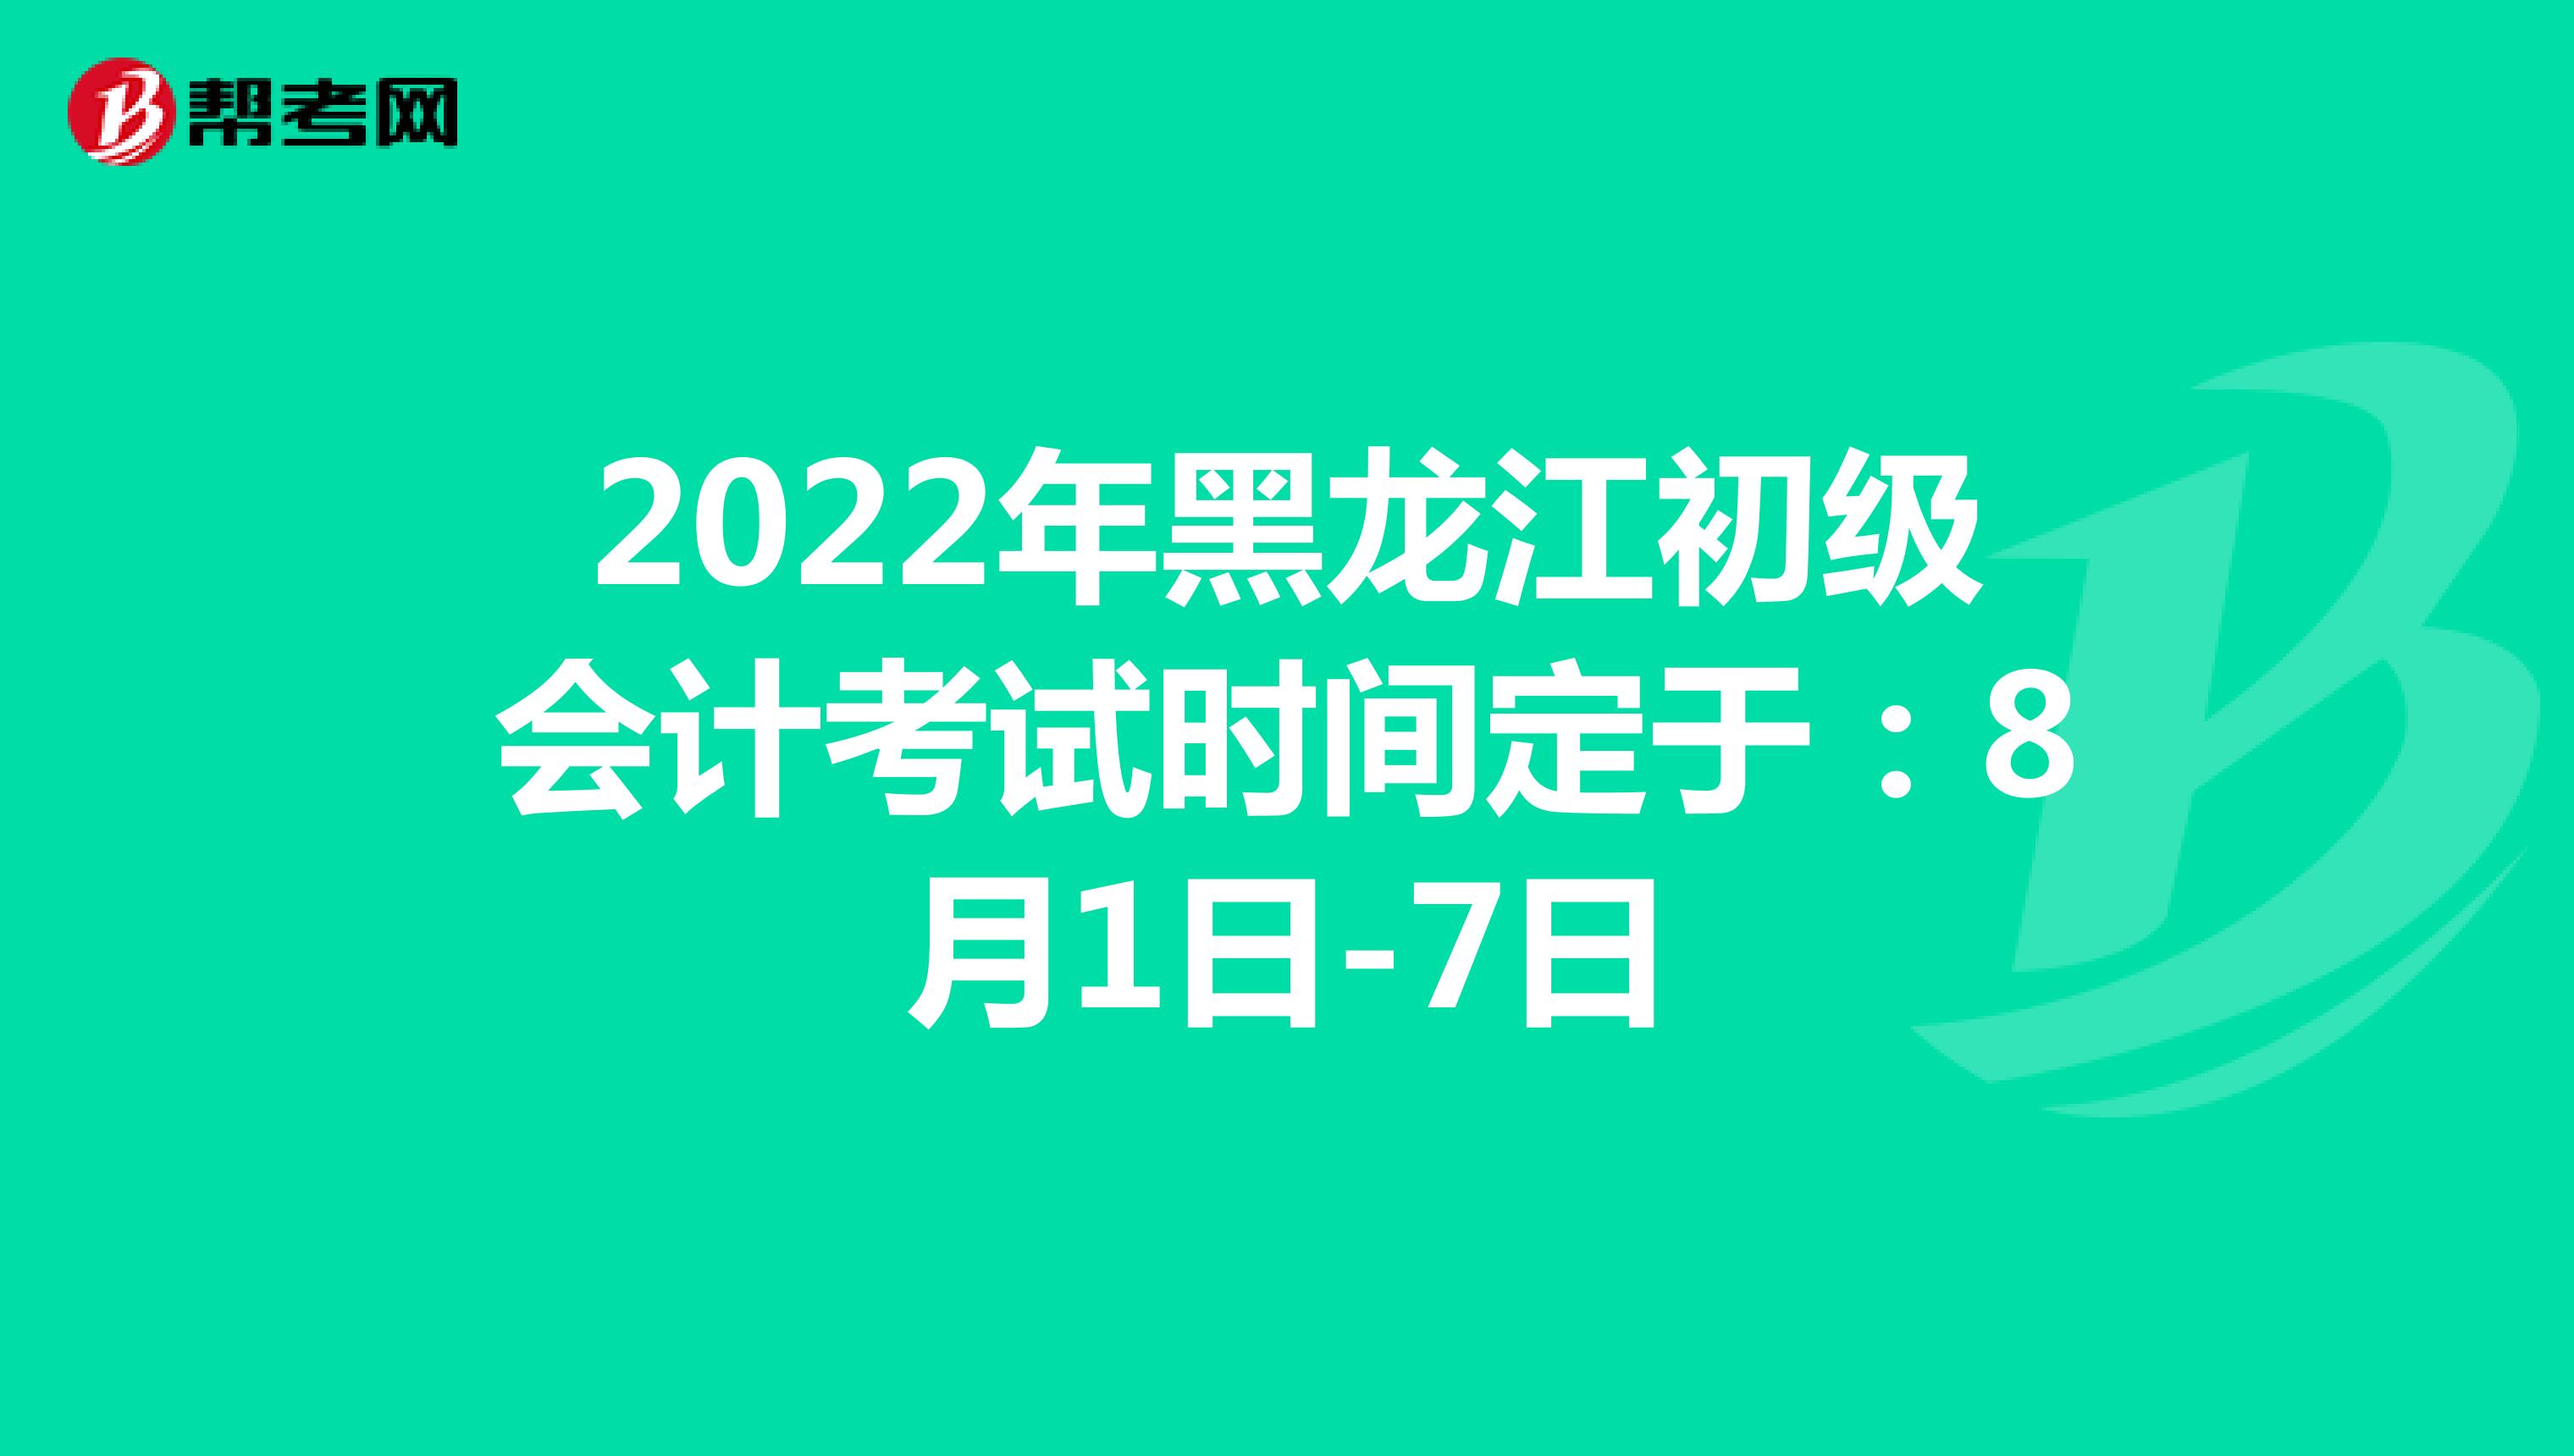 2022年黑龙江初级会计考试时间定于：8月1日-7日